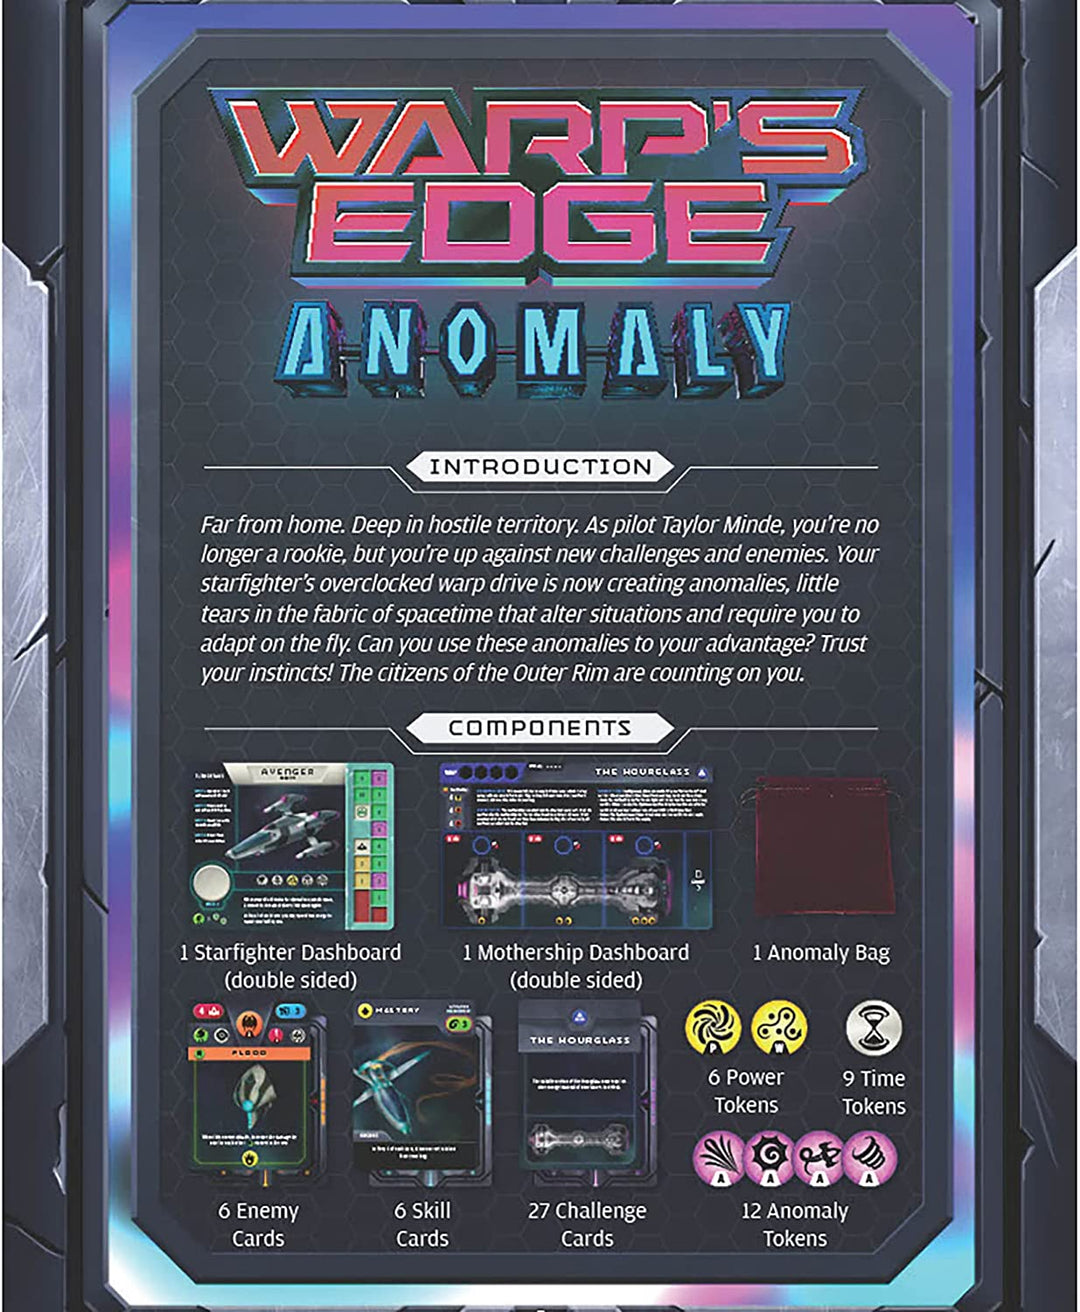 Warp's Edge: Anomalie-Erweiterung